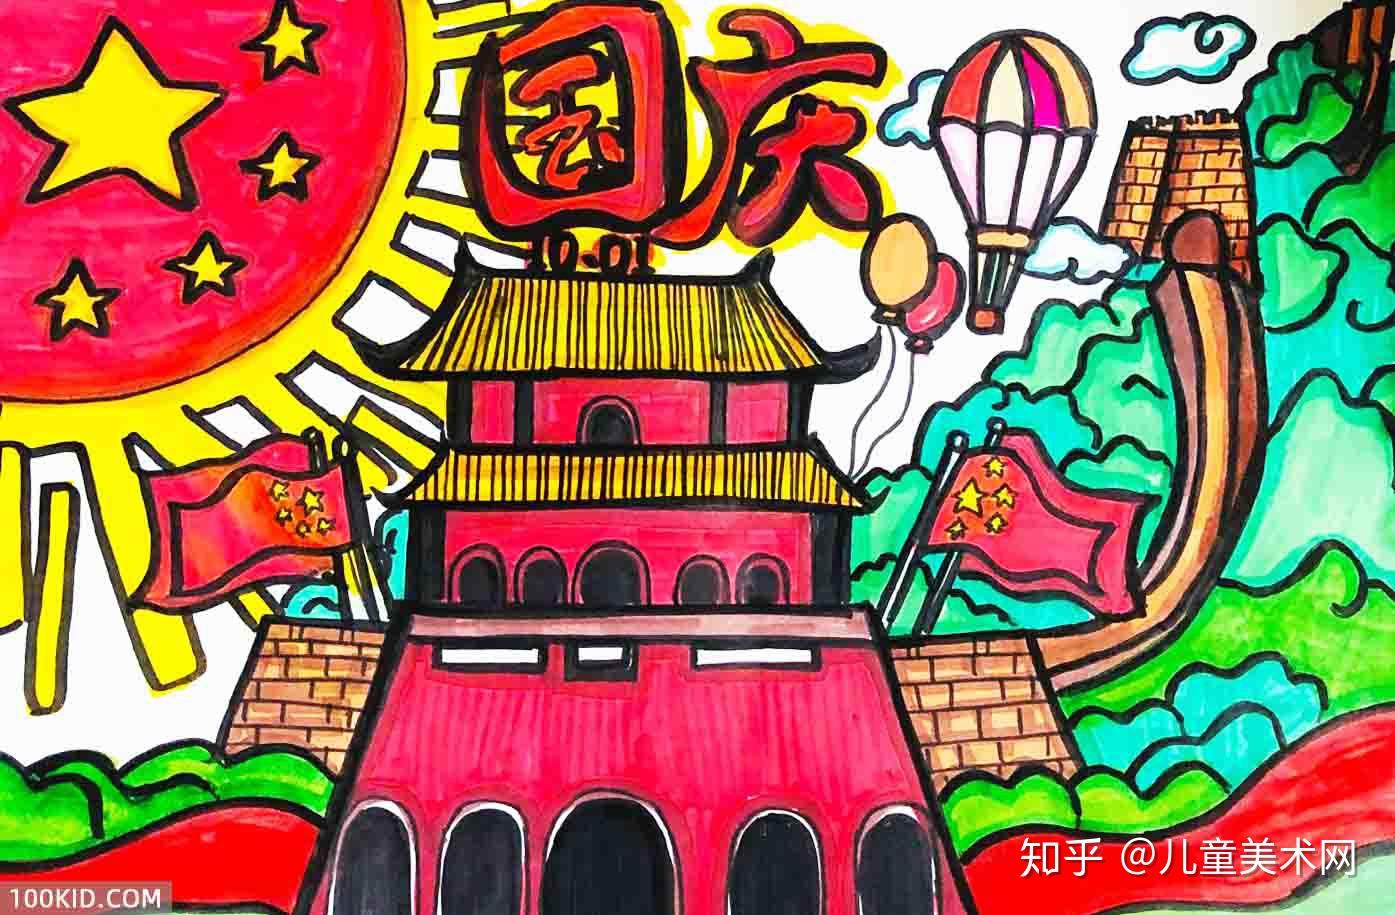 【寻美桂林】在最美山水间感受艺术——桂林艺术研学 - 童画森林创新美术教育